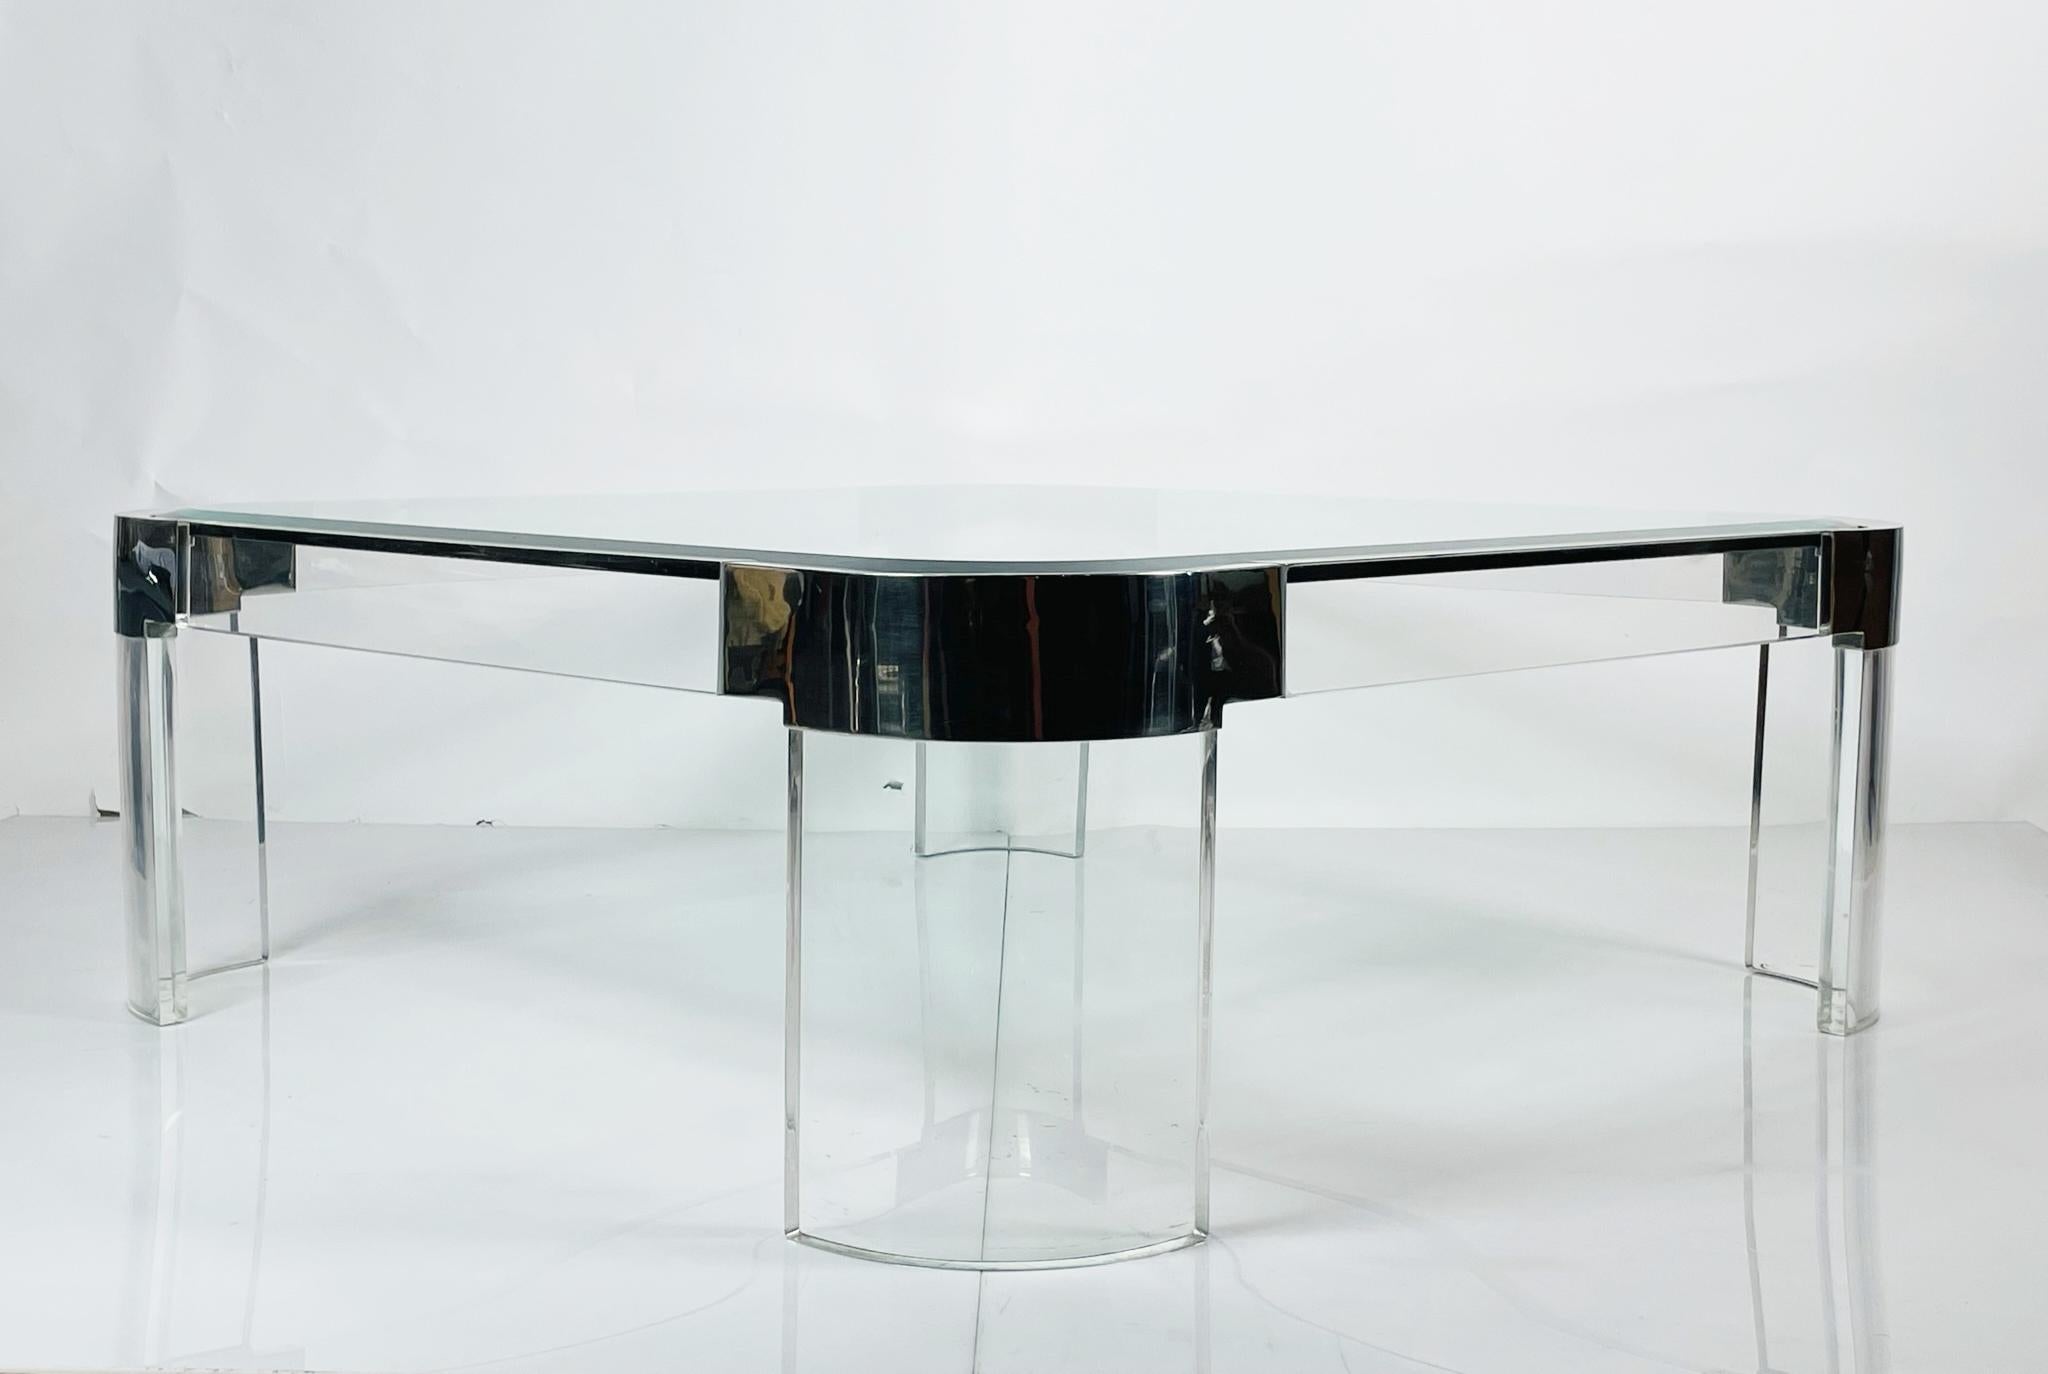 Schlanker Couchtisch aus Lucite, poliertem Nickel und dickem Glas mit abgeschrägter Kante.

Der Tisch wurde in den 1970er Jahren von der Lucite-Ikone Charles Hollis Jones entworfen. Der Tisch ist Teil der Charles Hollis Jones -Waterfall- Linie, die